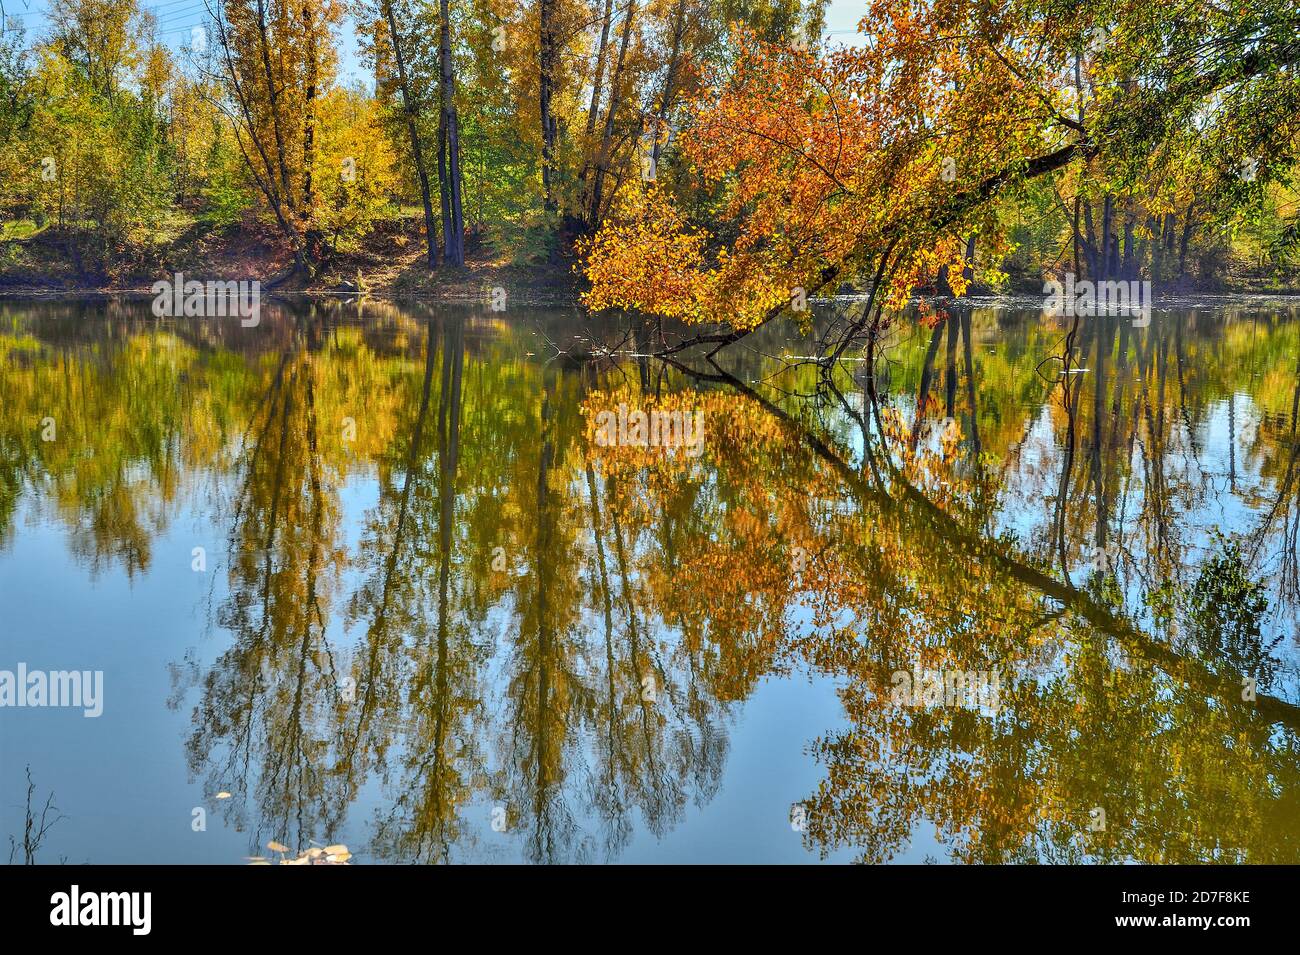 Automne feuillage doré des arbres autour du lac reflète dans l'eau bleue - automne paysage pittoresque au septembre ensoleillé chaud météo avec bleu clair sk Banque D'Images